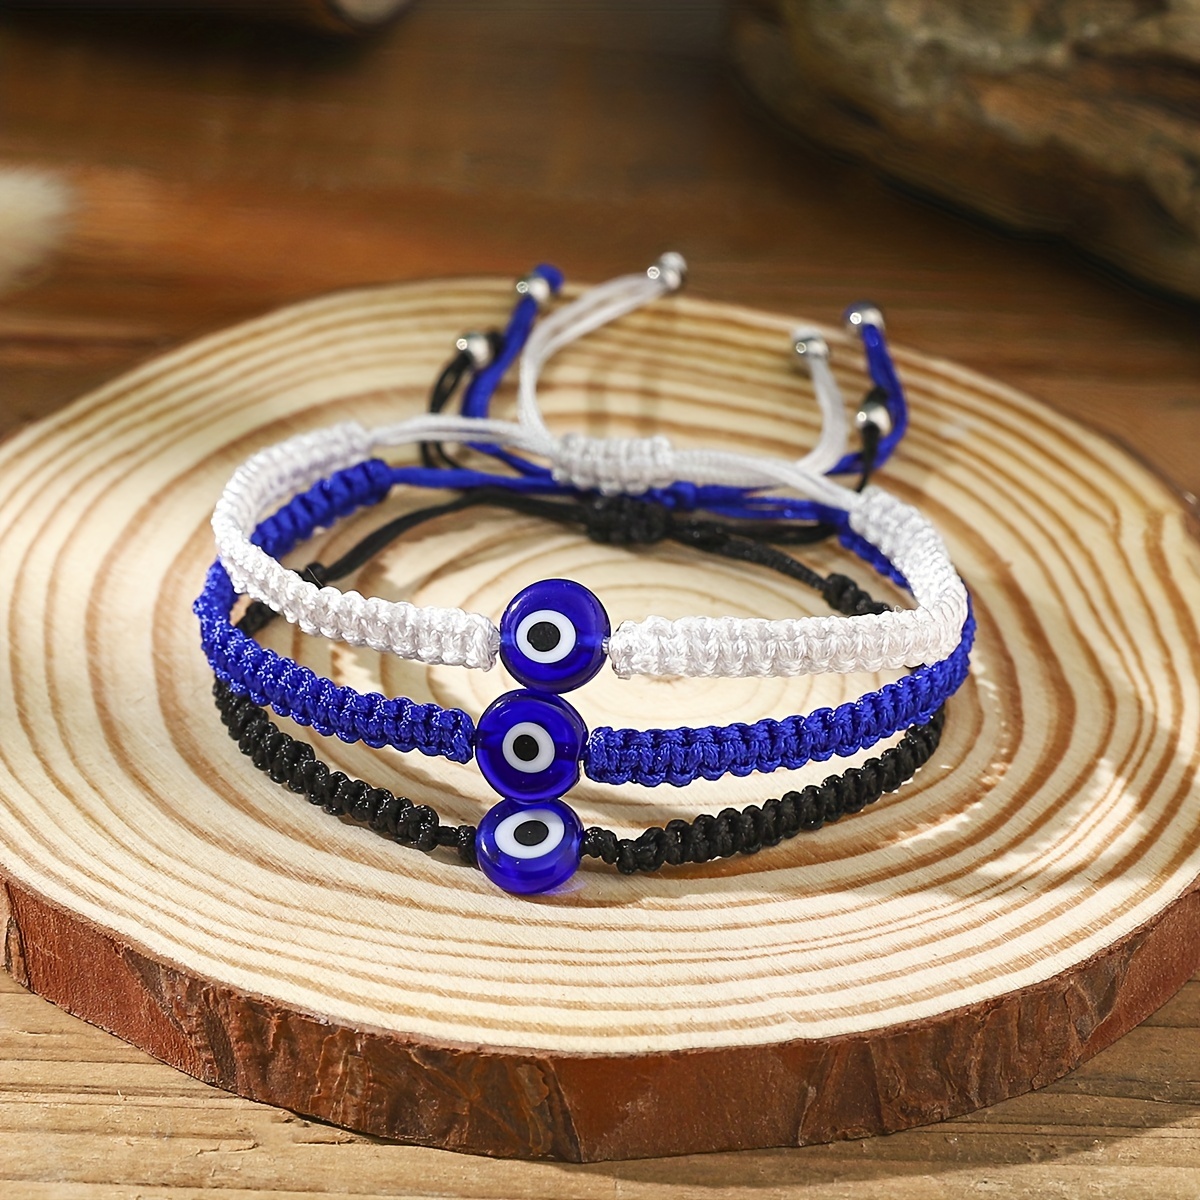 Bracelet cordon tressé bleu marine - Cadeau original pour homme.